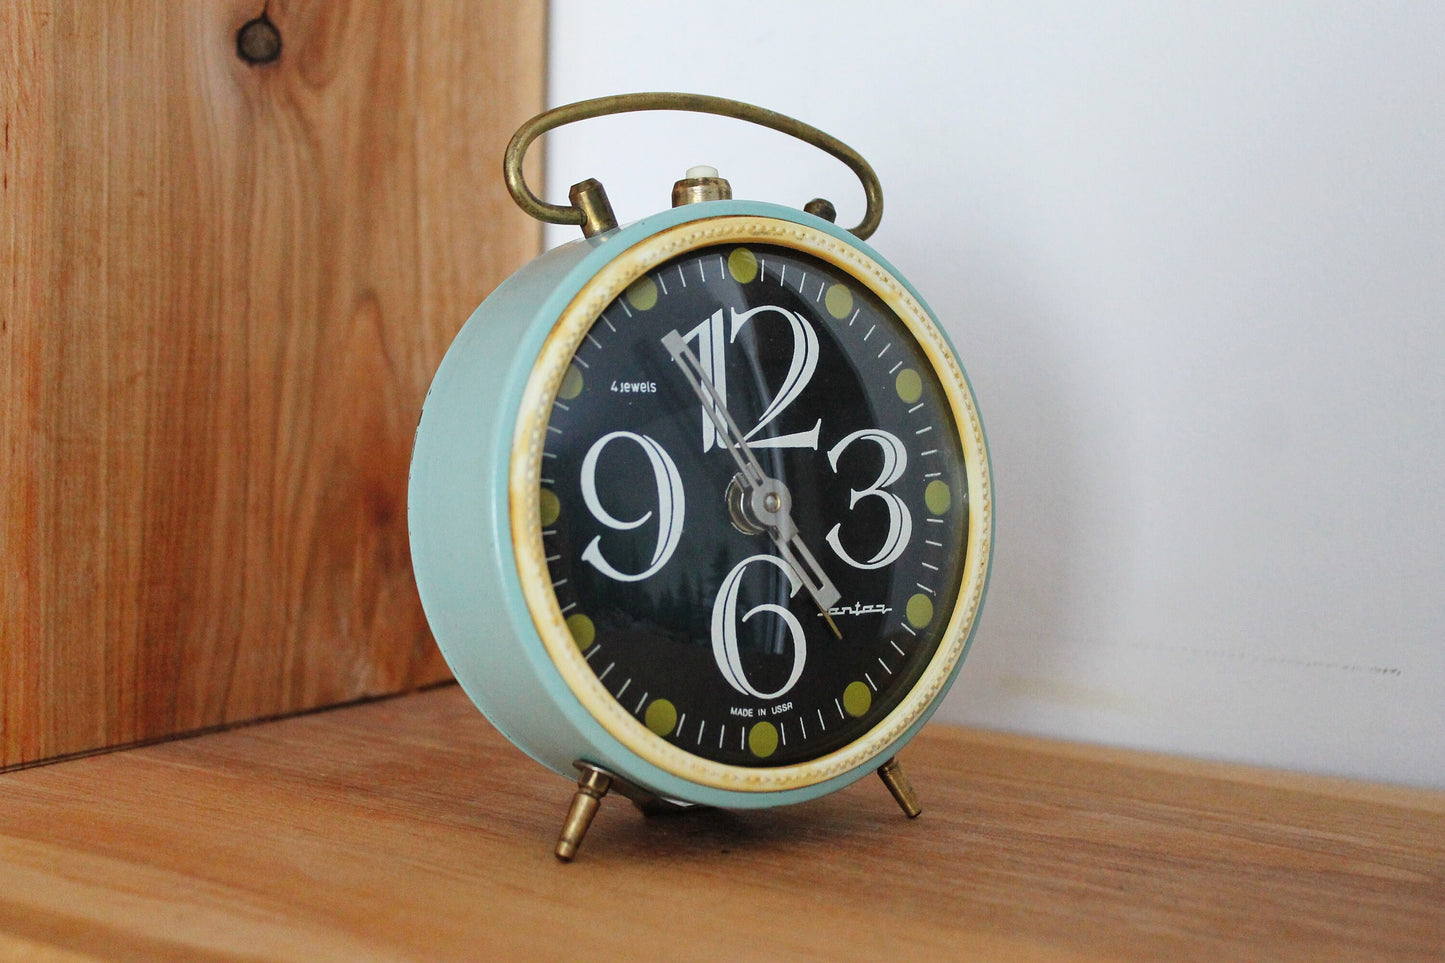 Shabby chic Jantar Alarm clock - Soviet clock 'Jantar' - Made in USSR - Vintage Alarm Clock - Working